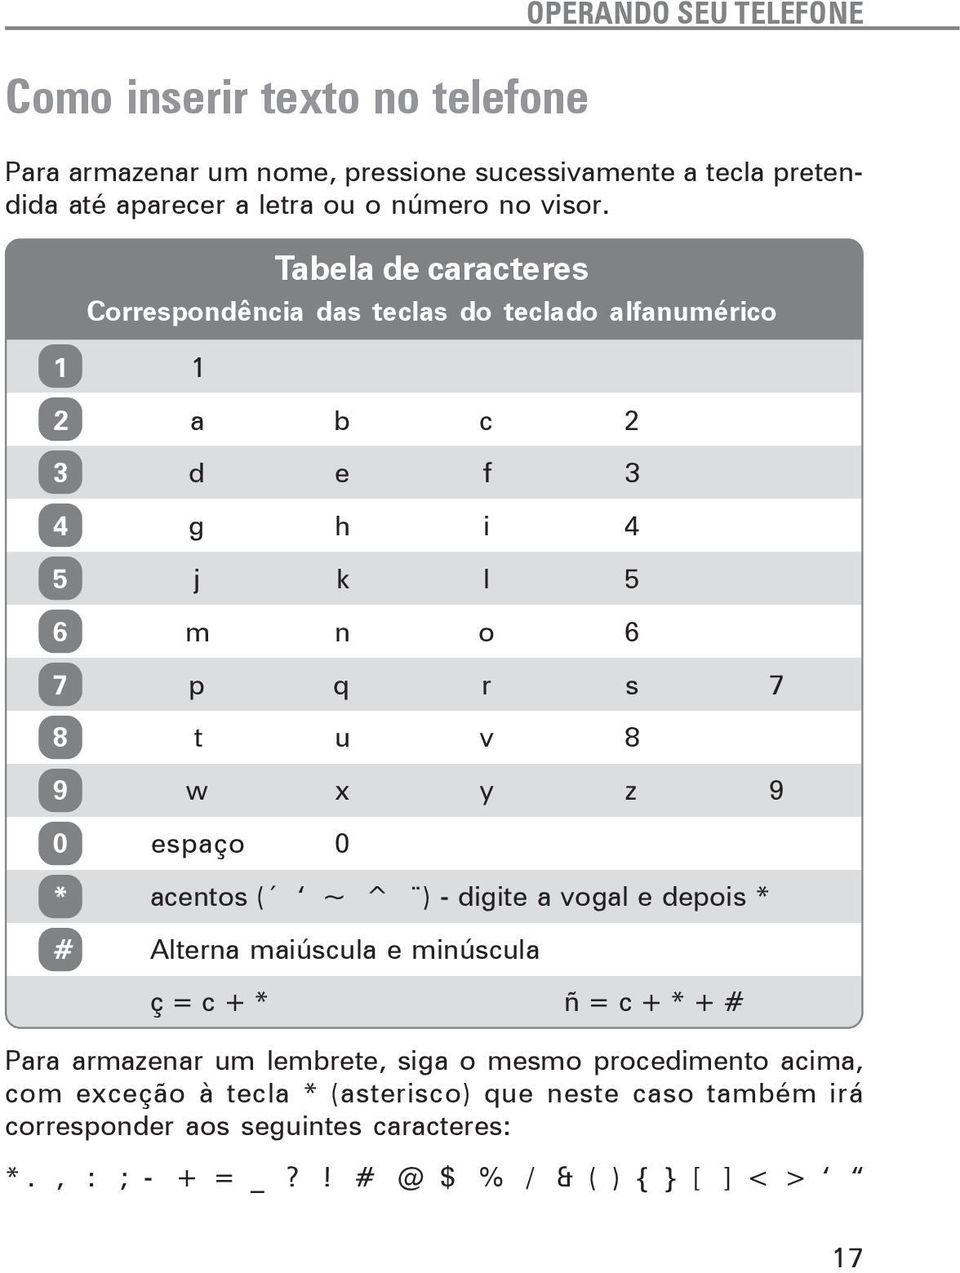 Tabela de caracteres Correspondência das teclas do teclado alfanumérico 1 1 2 a b c 2 3 d e f 3 4 g h i 4 5 j k l 5 6 m n o 6 7 p q r s 7 8 t u v 8 9 w x y z